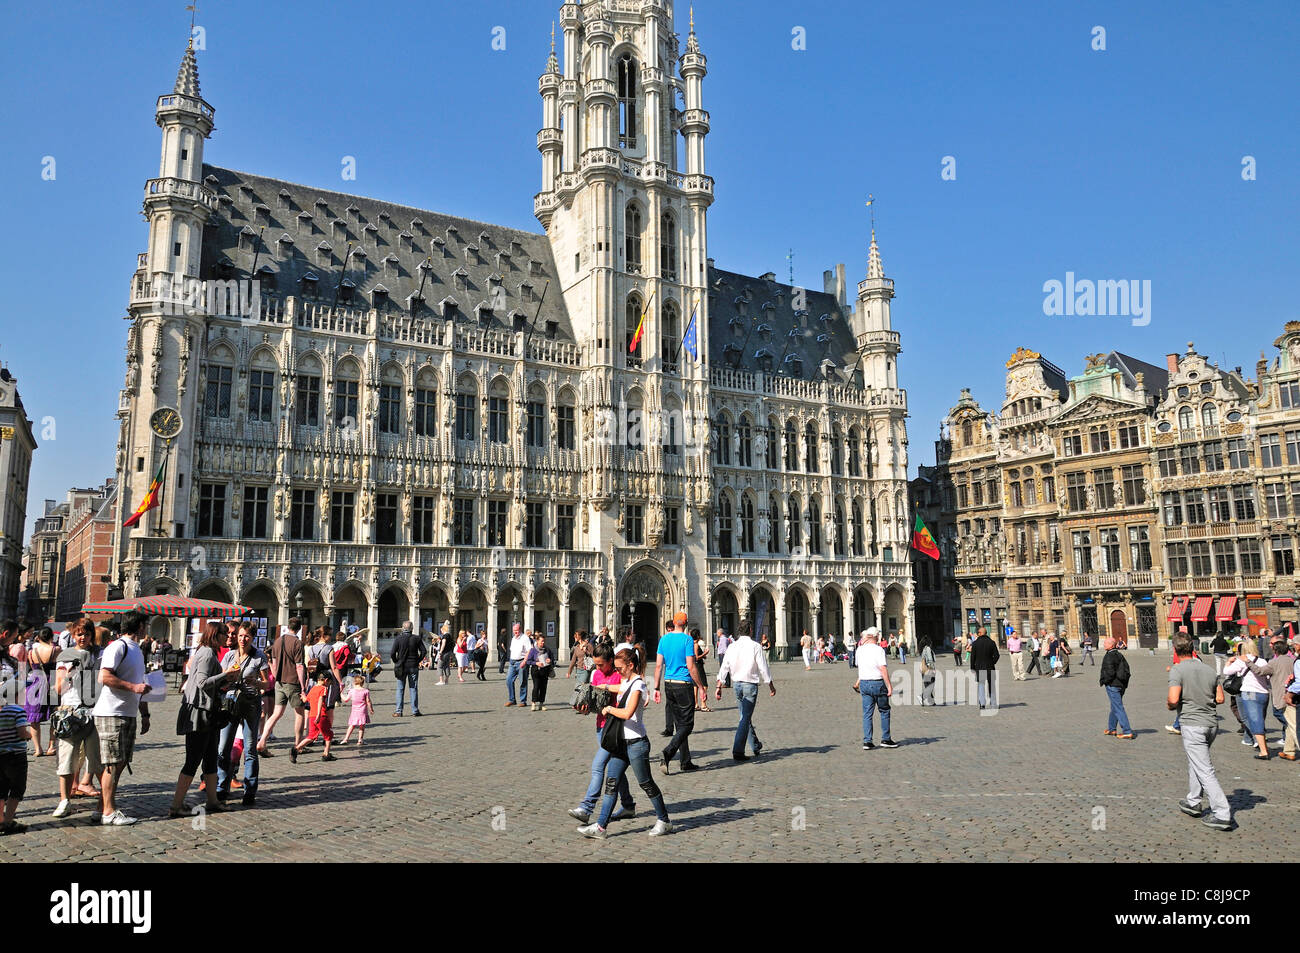 Arquitectura, Benelux, Bélgica, Bruselas, Europa, Gótico, capital, city hall, Landmark, administración de la ciudad, la UNESCO, administrat Foto de stock